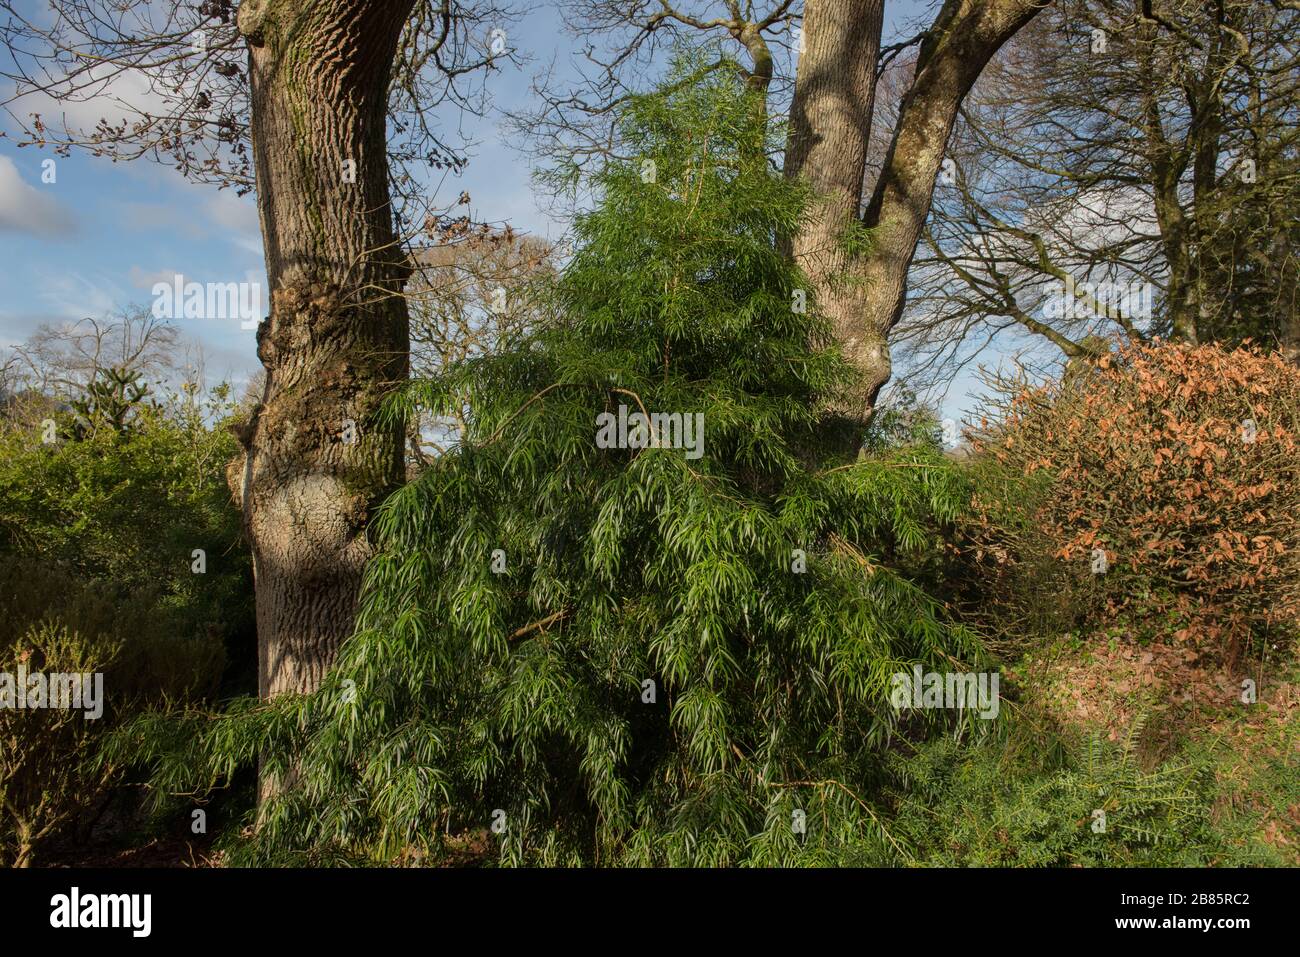 Arbre podocarpe à feuilles de saule (Podocarpus Salignus) dans un jardin boisé dans le Devon rural, Angleterre, Royaume-Uni Banque D'Images